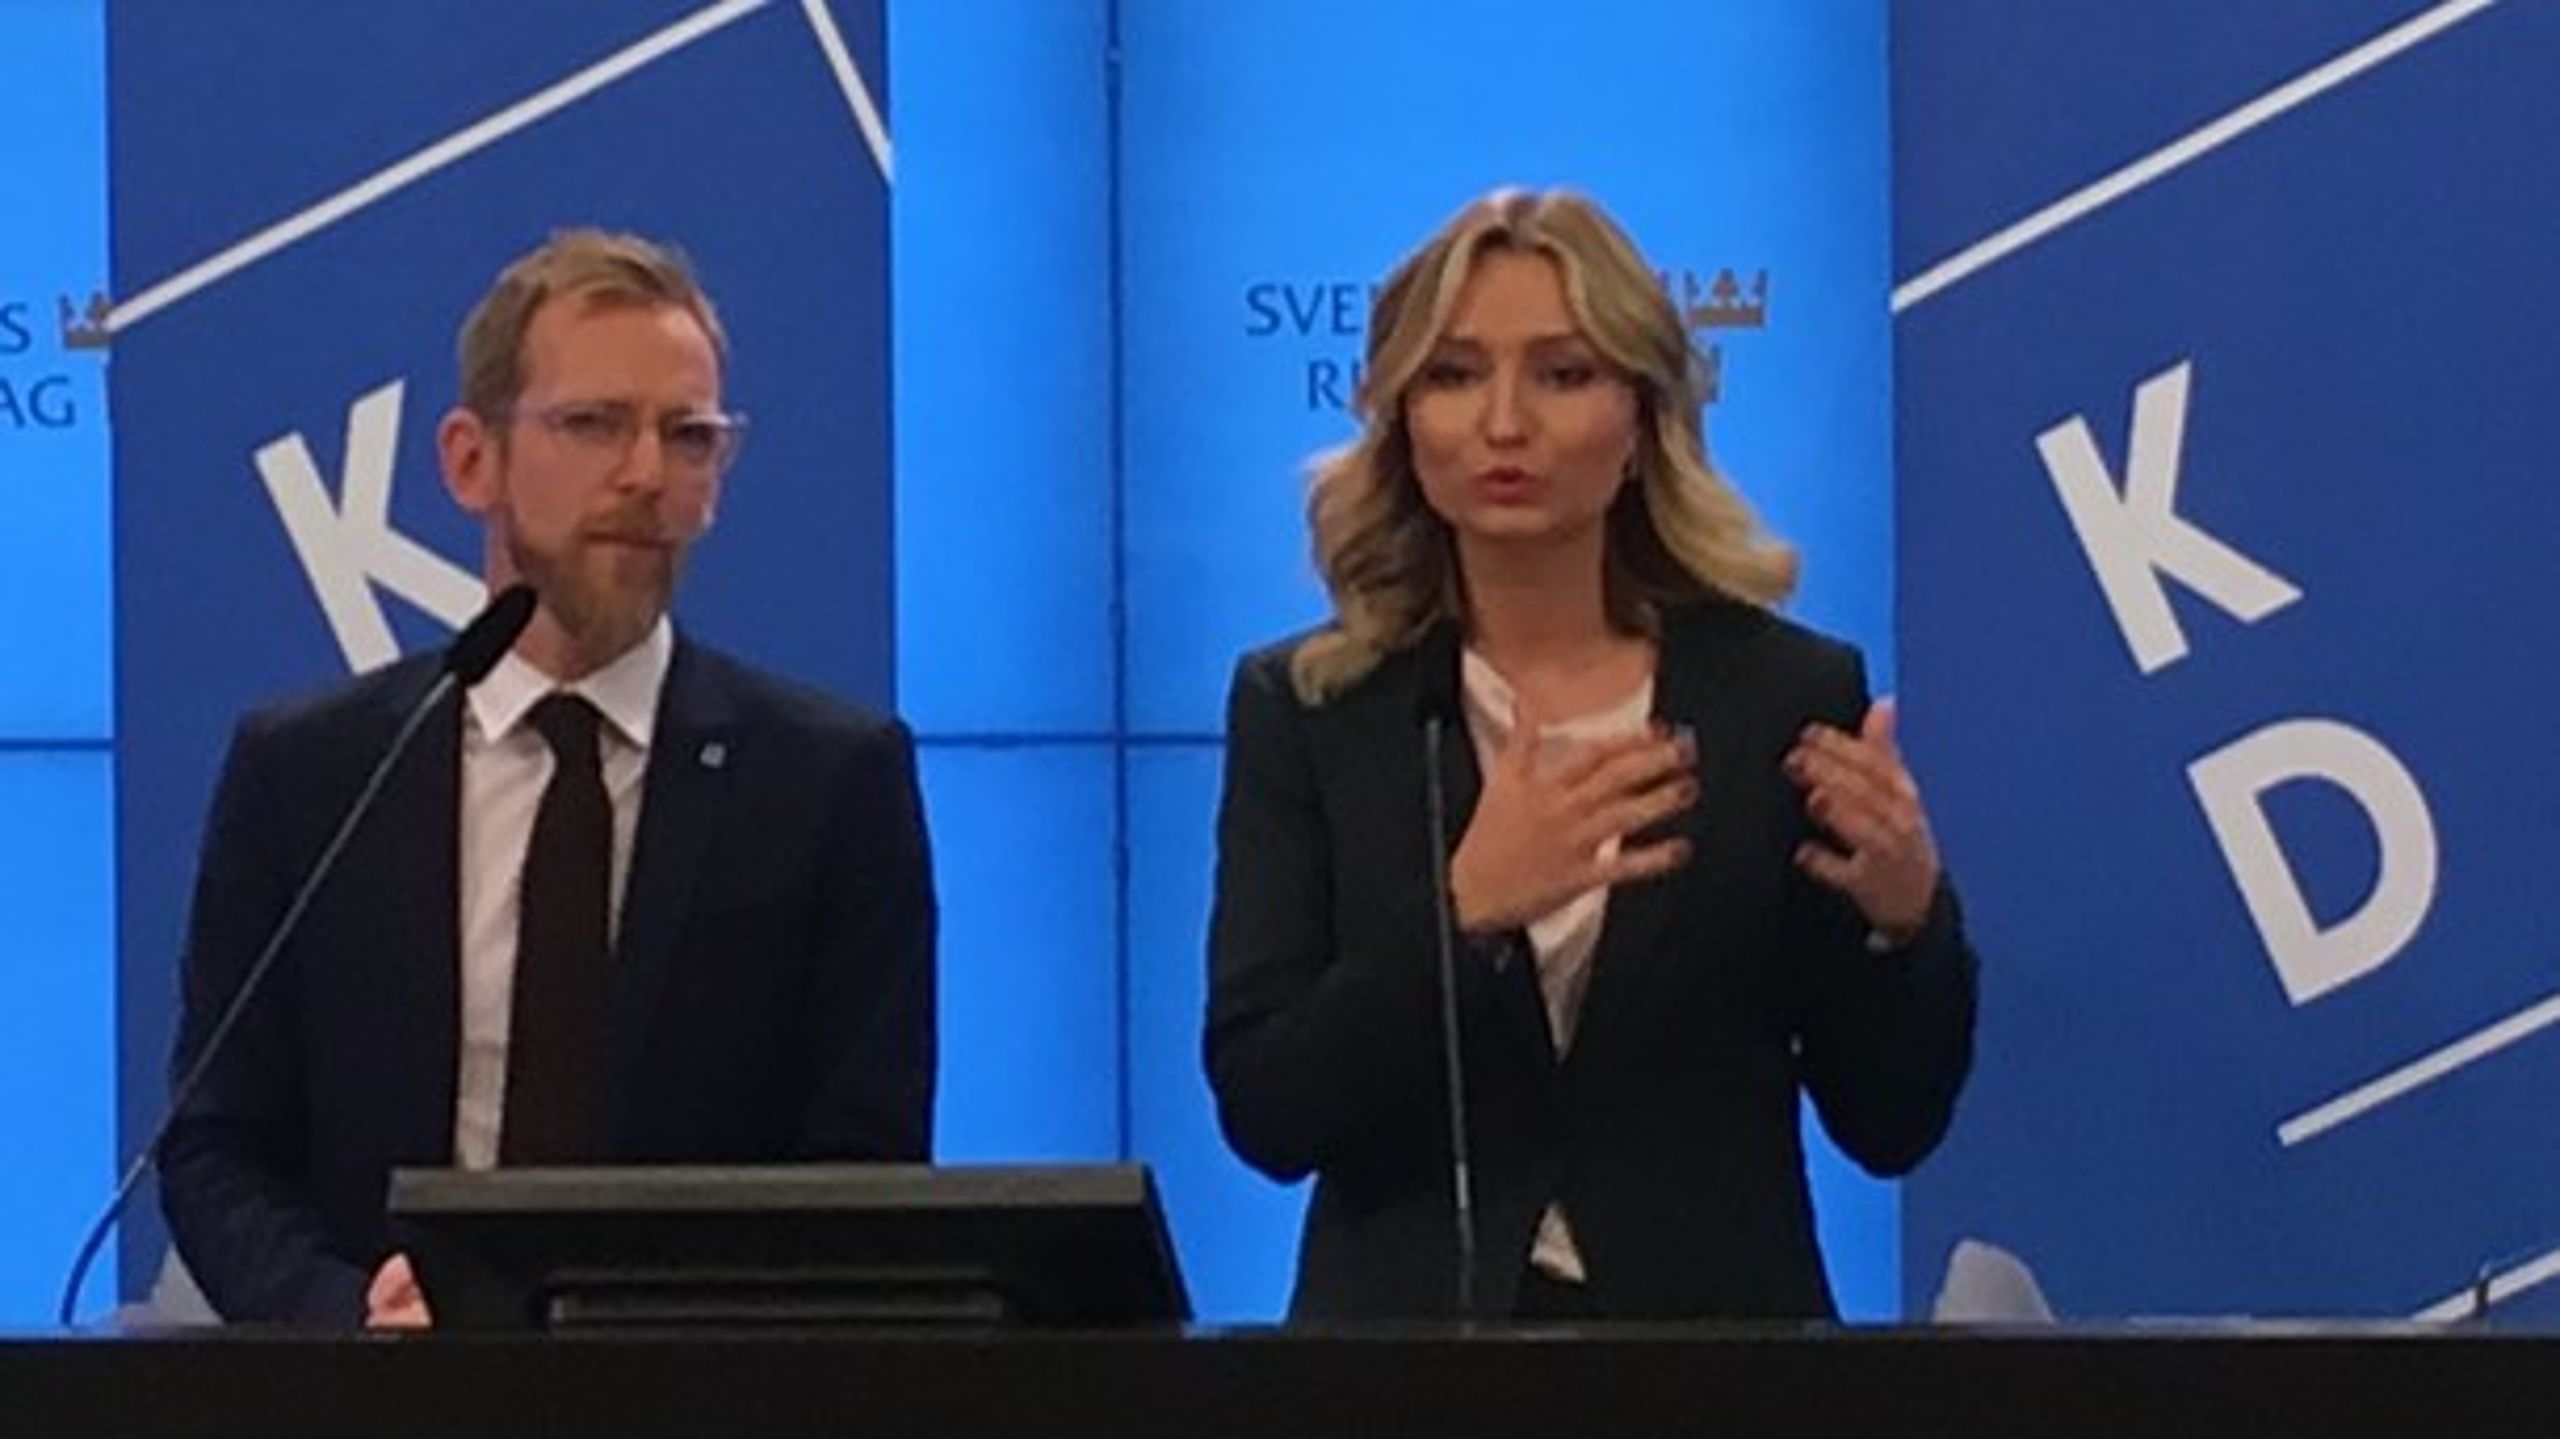 Kristdemokraternas ekonomisk-politiska talesperson Jakob Forssmed och partiledare Ebba Busch Thor vid presentationen av budgetmotionen i riksdagen.